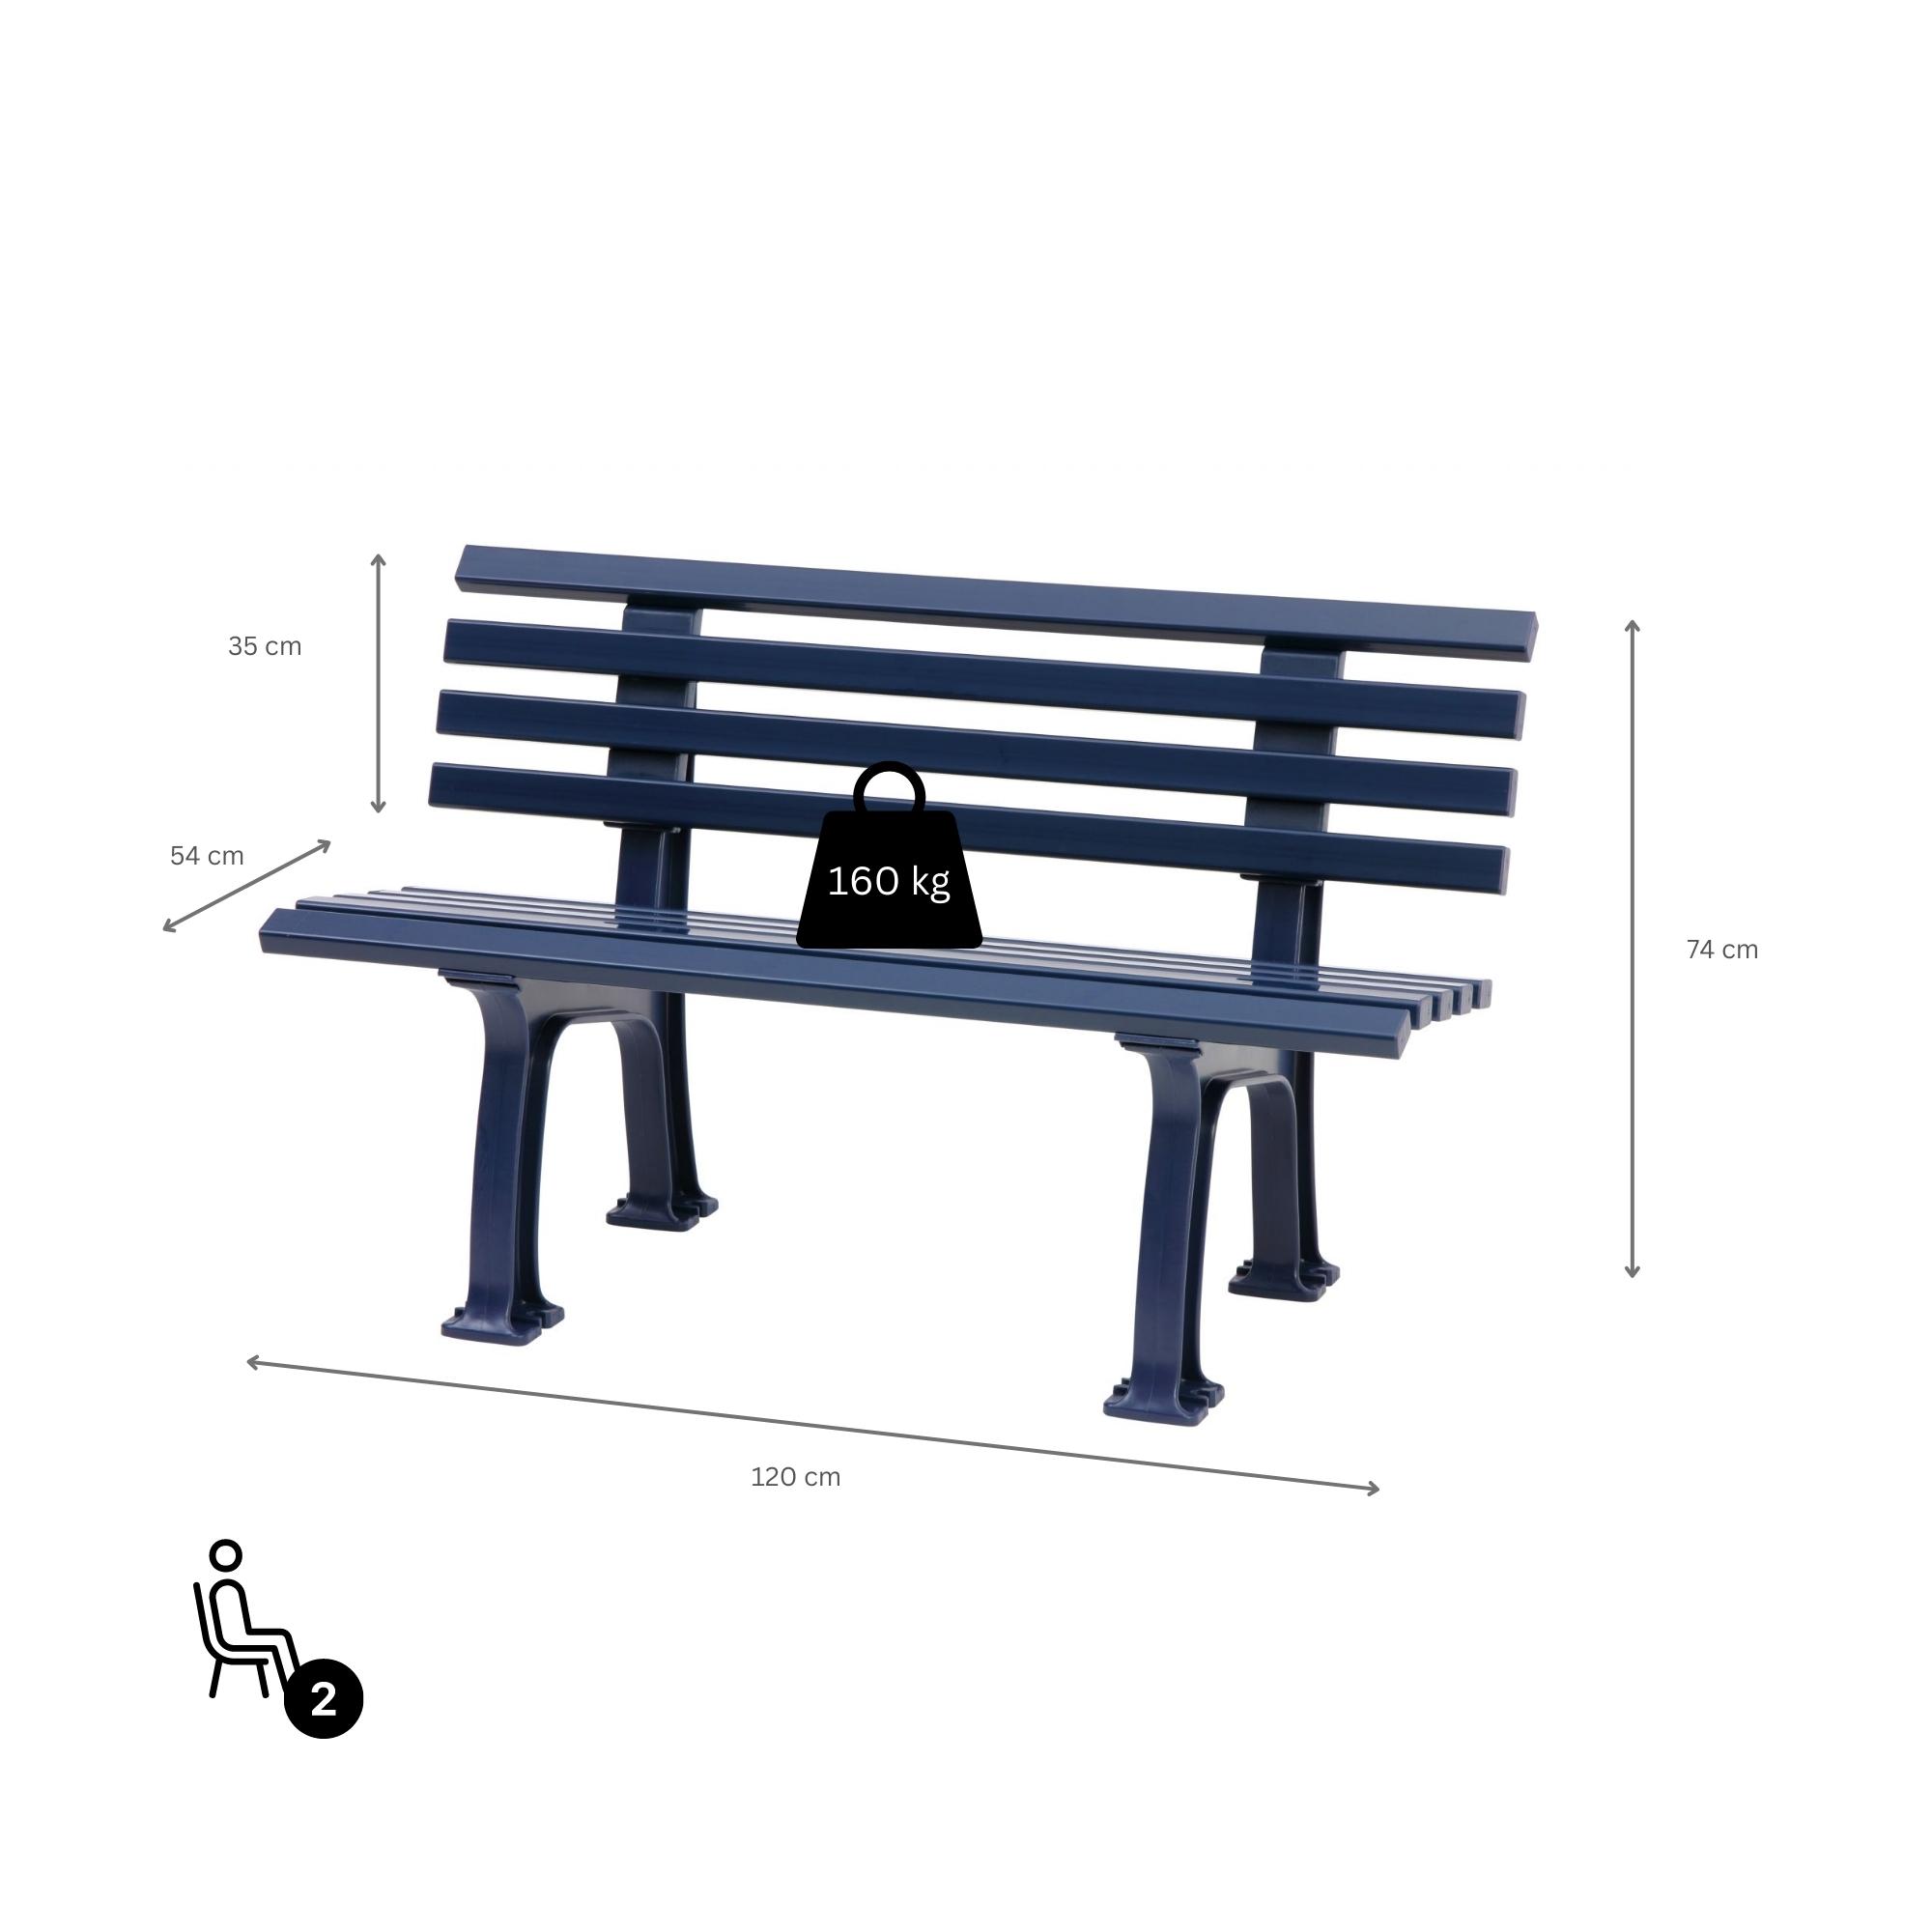 Gartenbank Antigua | 2-Sitzer | Blau | HxBxT 74x120x54cm | Witterungs- & UV-beständiger Kunststoff | Parkbank Sitzbank Außenbereich Garten Balkon Terrasse